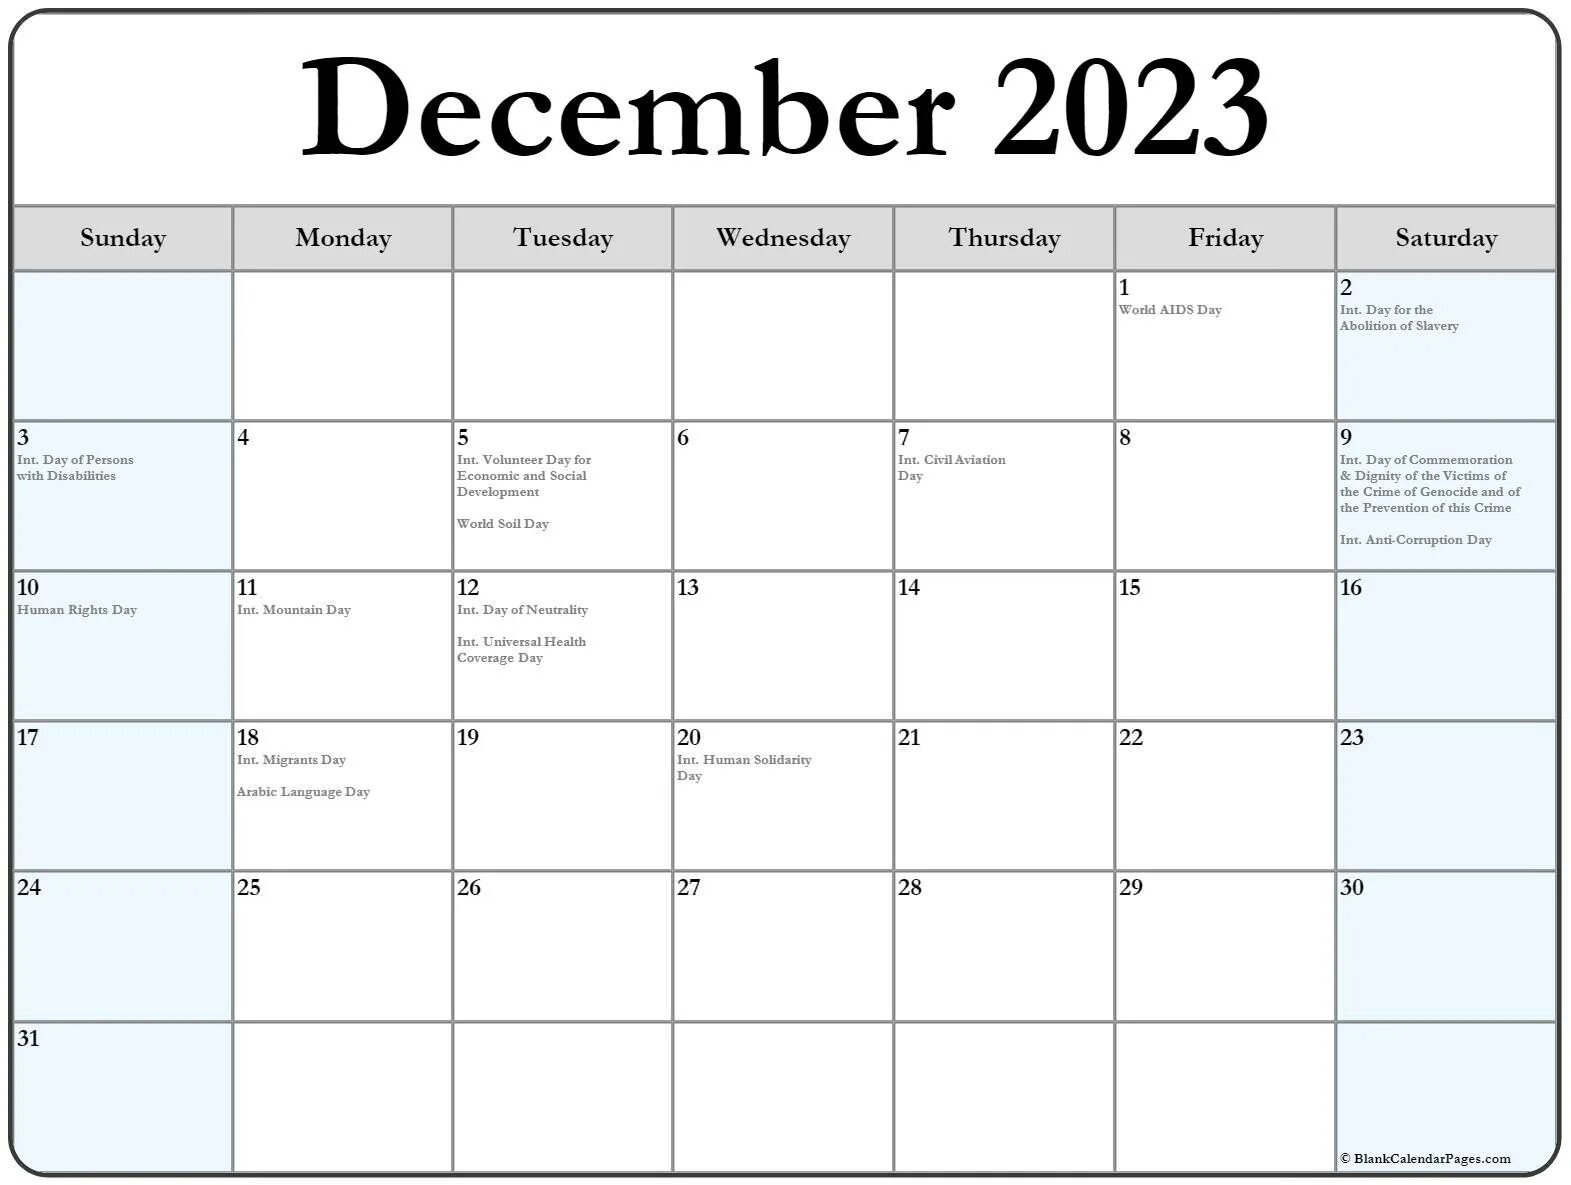 Тинькофф декабрь 2023. Календарь декабрь 2023. Календарь на декабрь 2023 года. Ноябрь декабрь 2023. Календарь на 2023 декабрь месяц с праздниками.